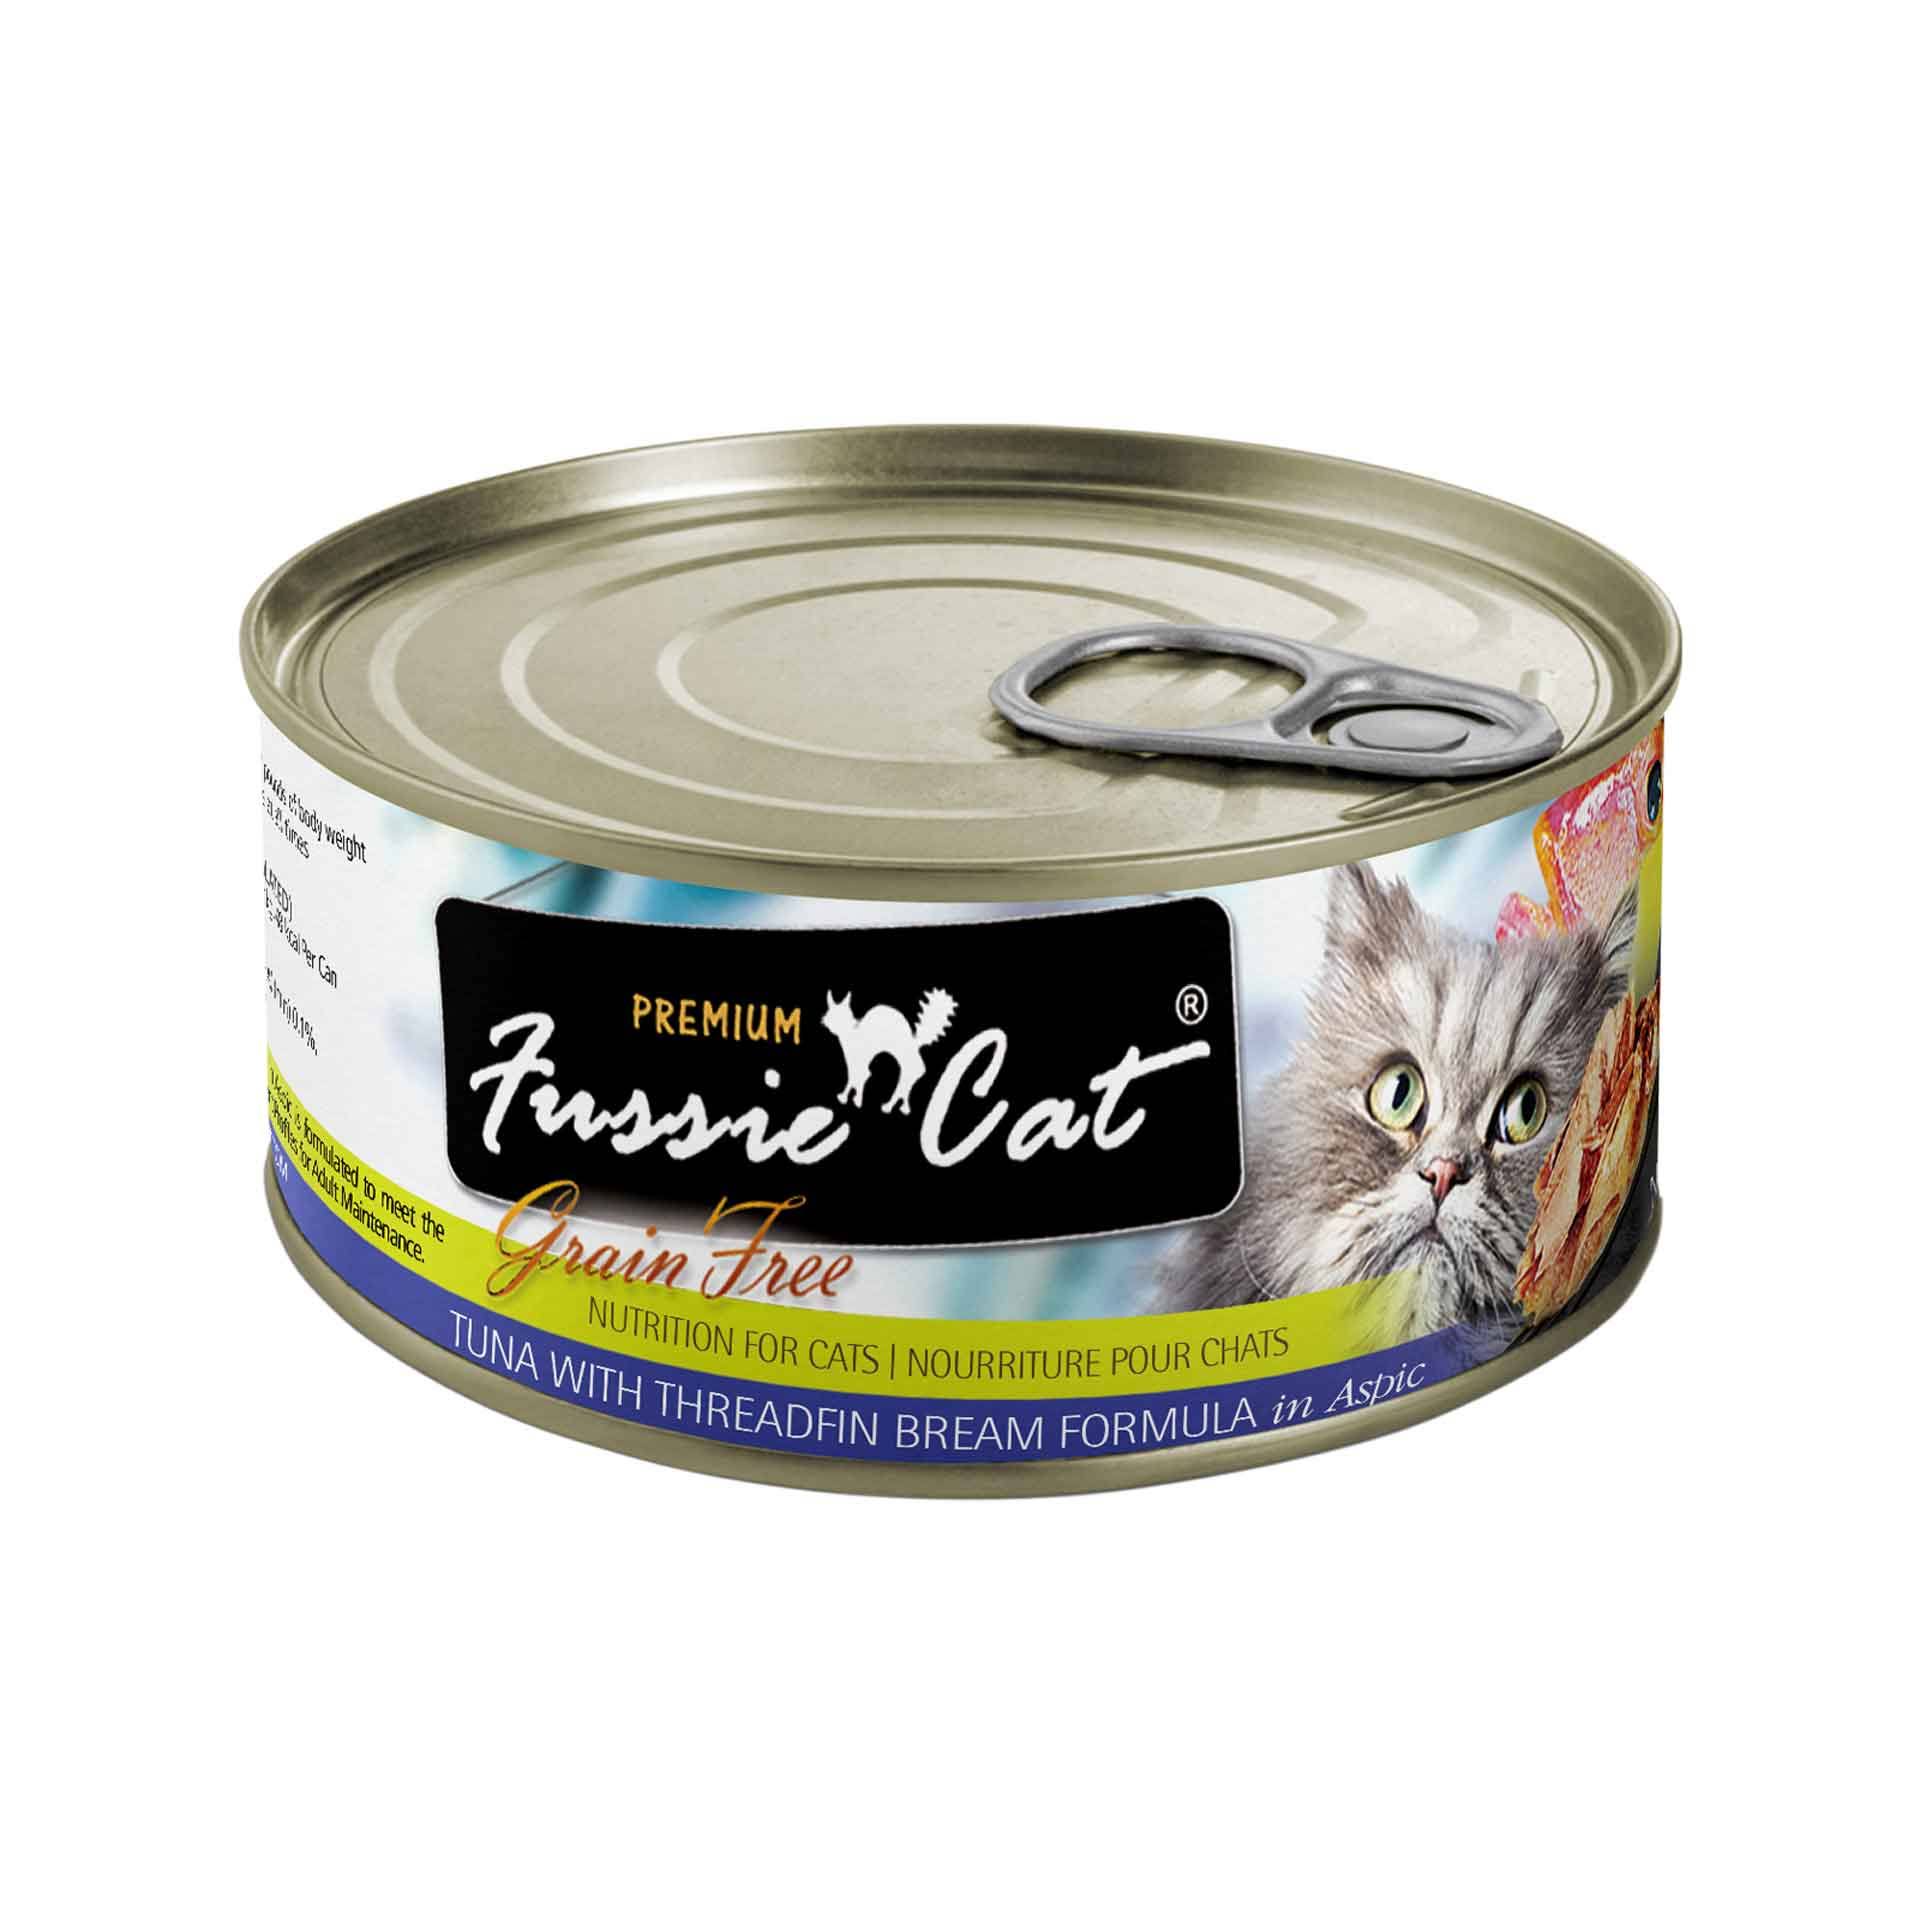 Fussie Cat Food - Tuna With Threadfin Bream Formula In Aspic